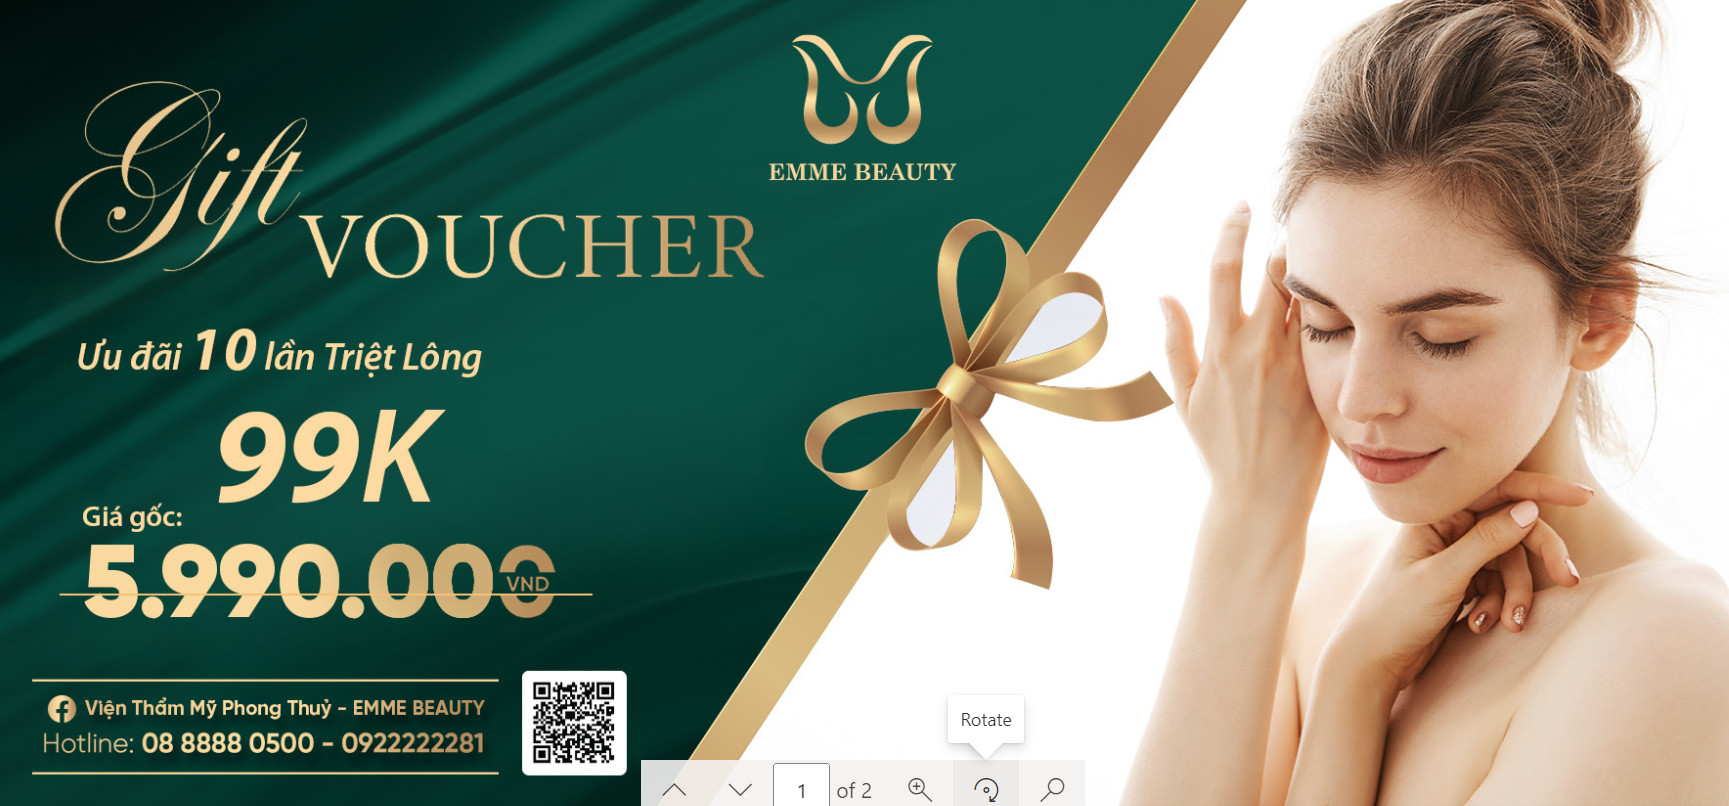 [Gift Voucher] Emme Beauty - Triệt Lông 10 lần 99k